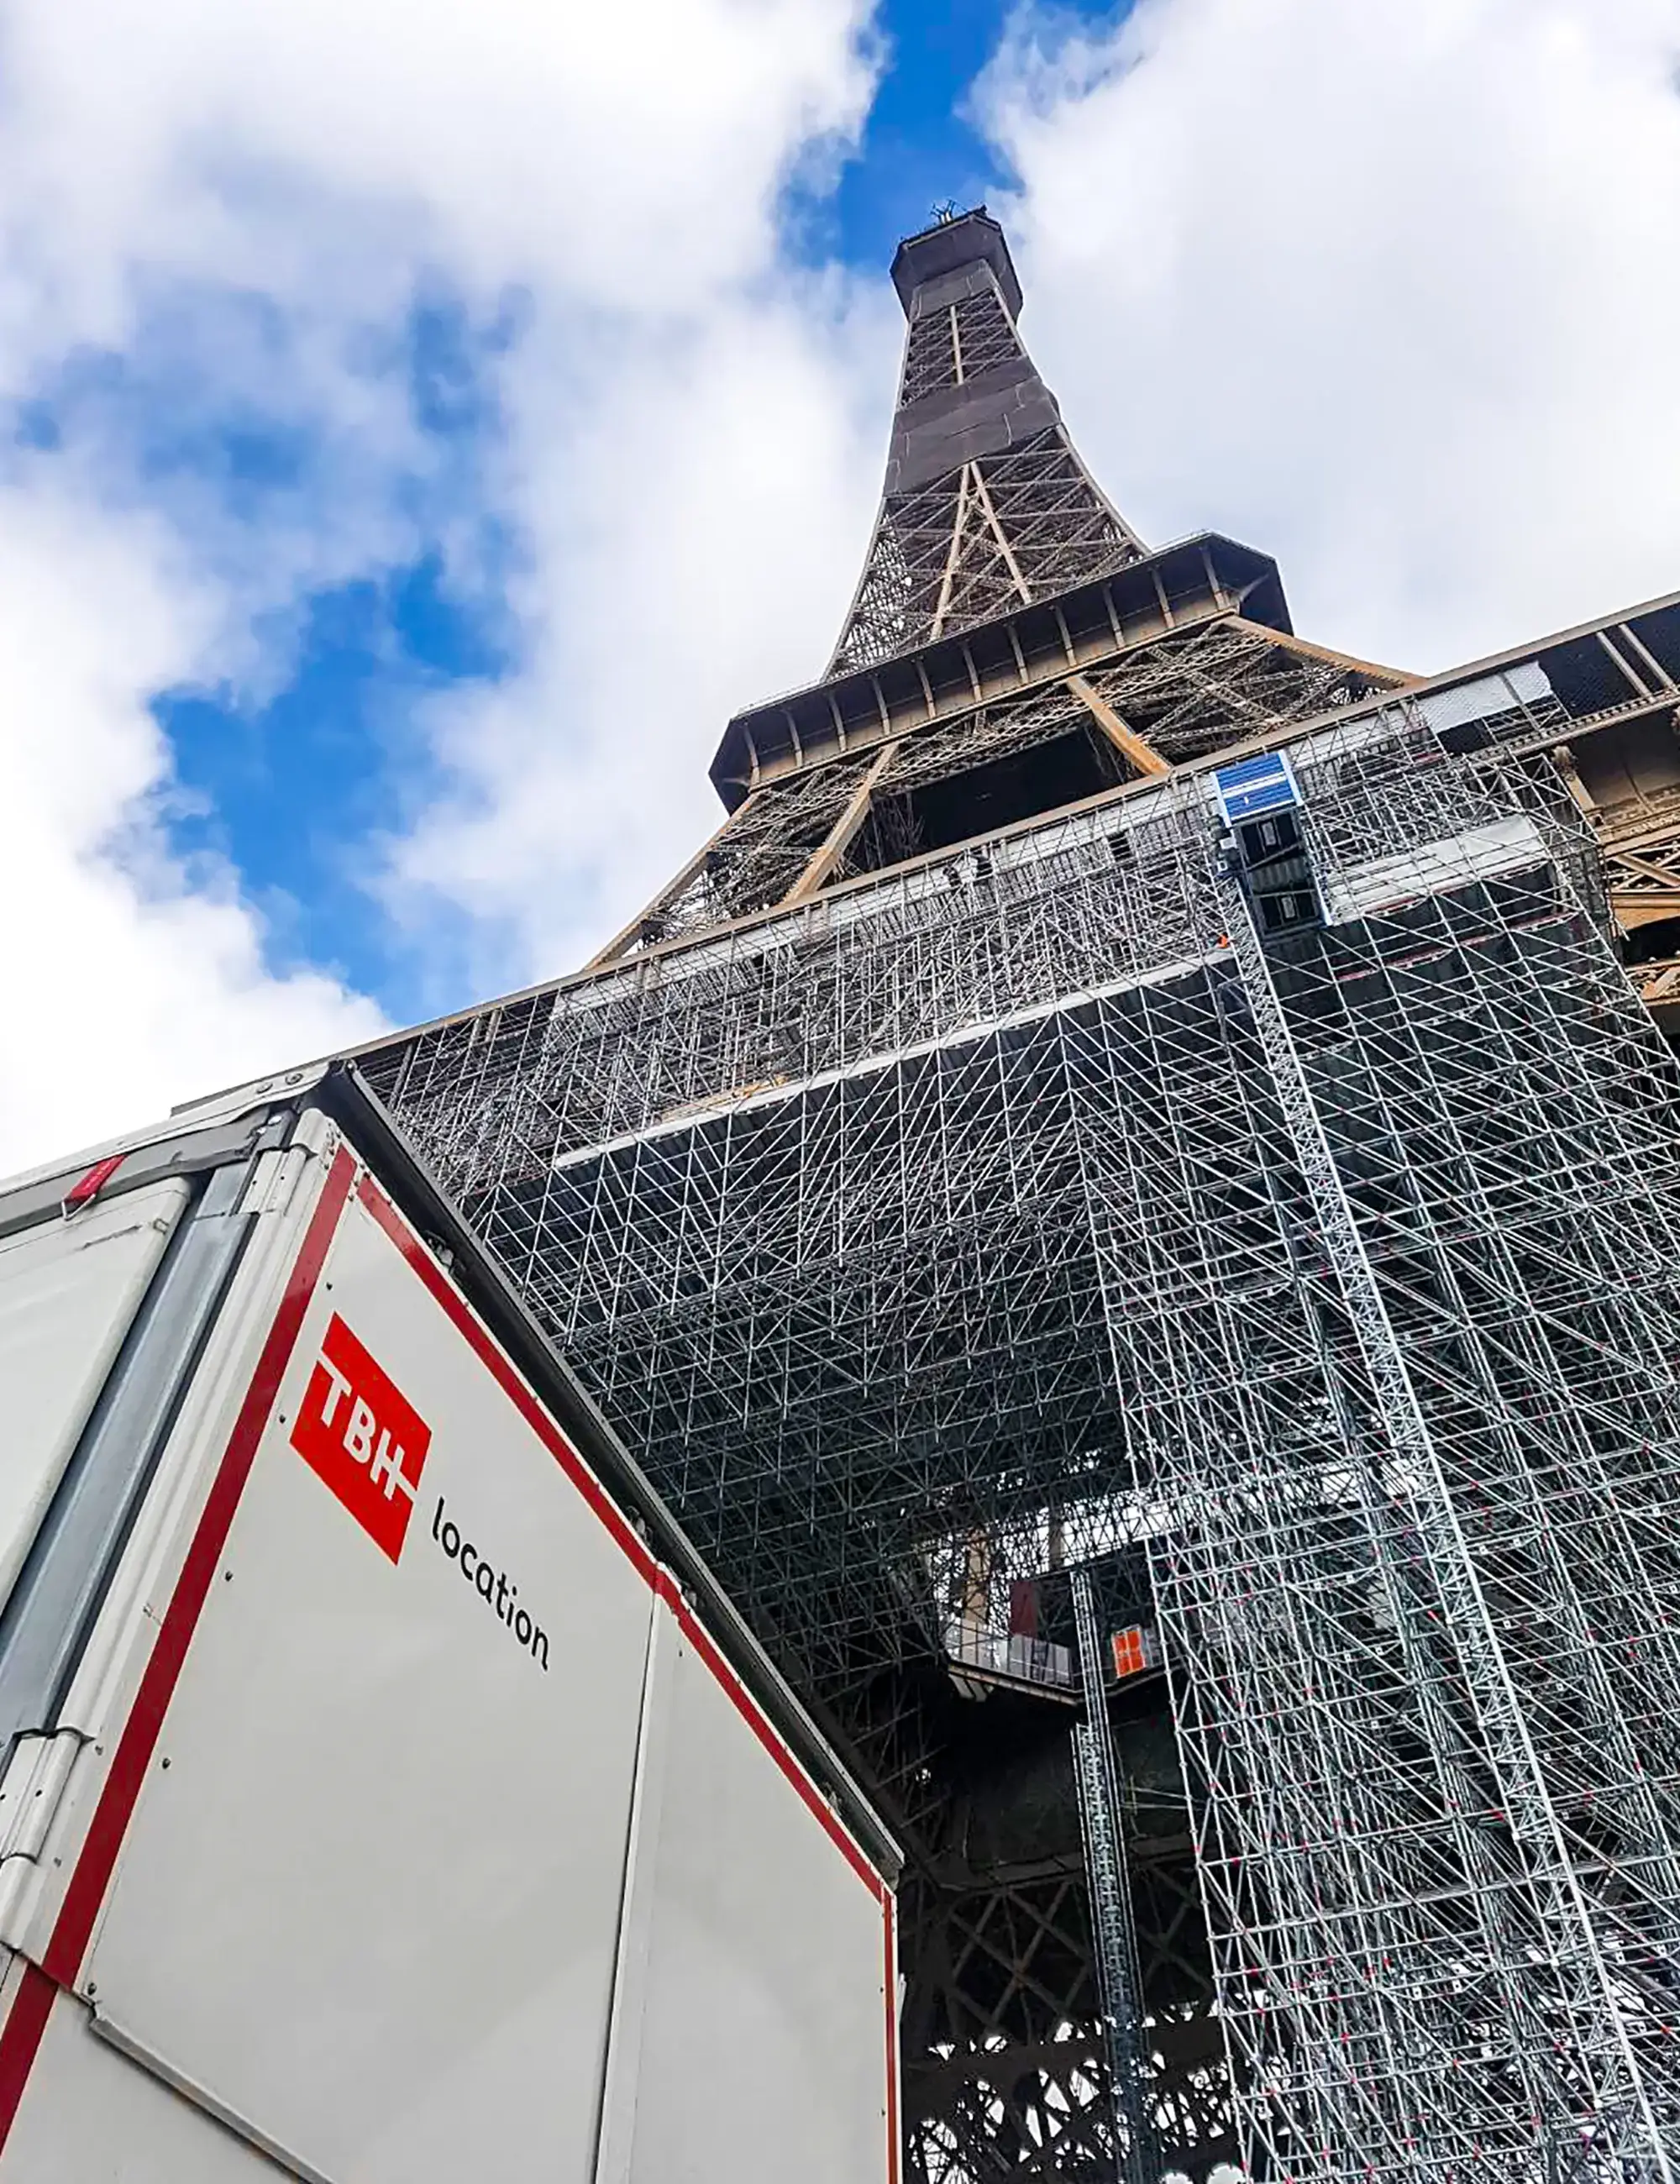 Vue d'un camion TBH location au pied de la Tour Eiffel